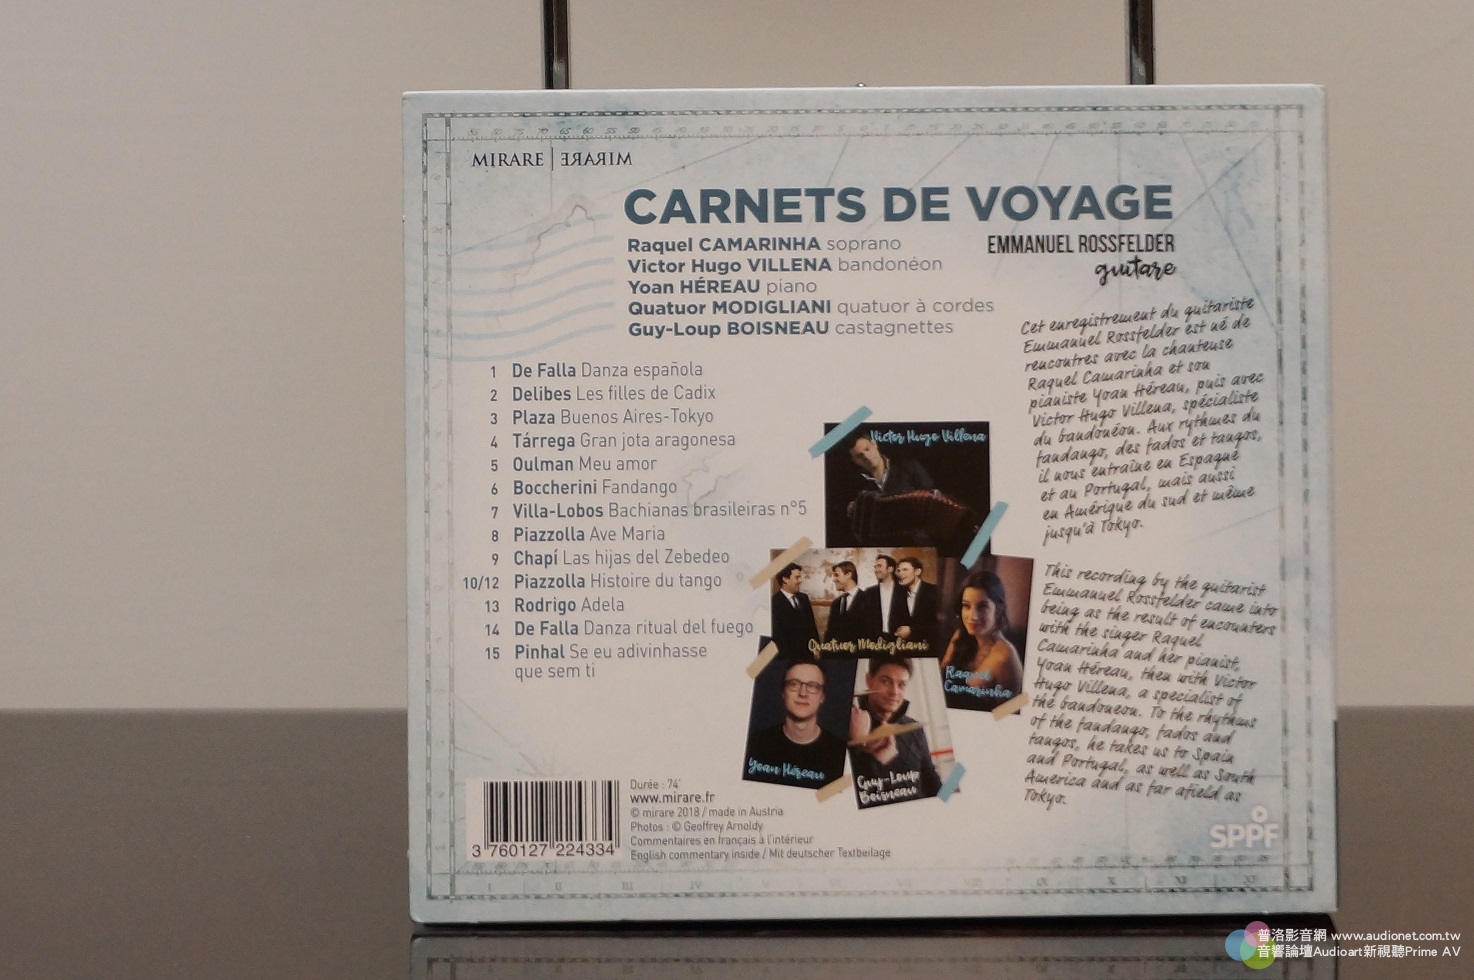 Carnets De Voyage, 演奏、演唱、錄音都很棒的一張音樂旅途遊記